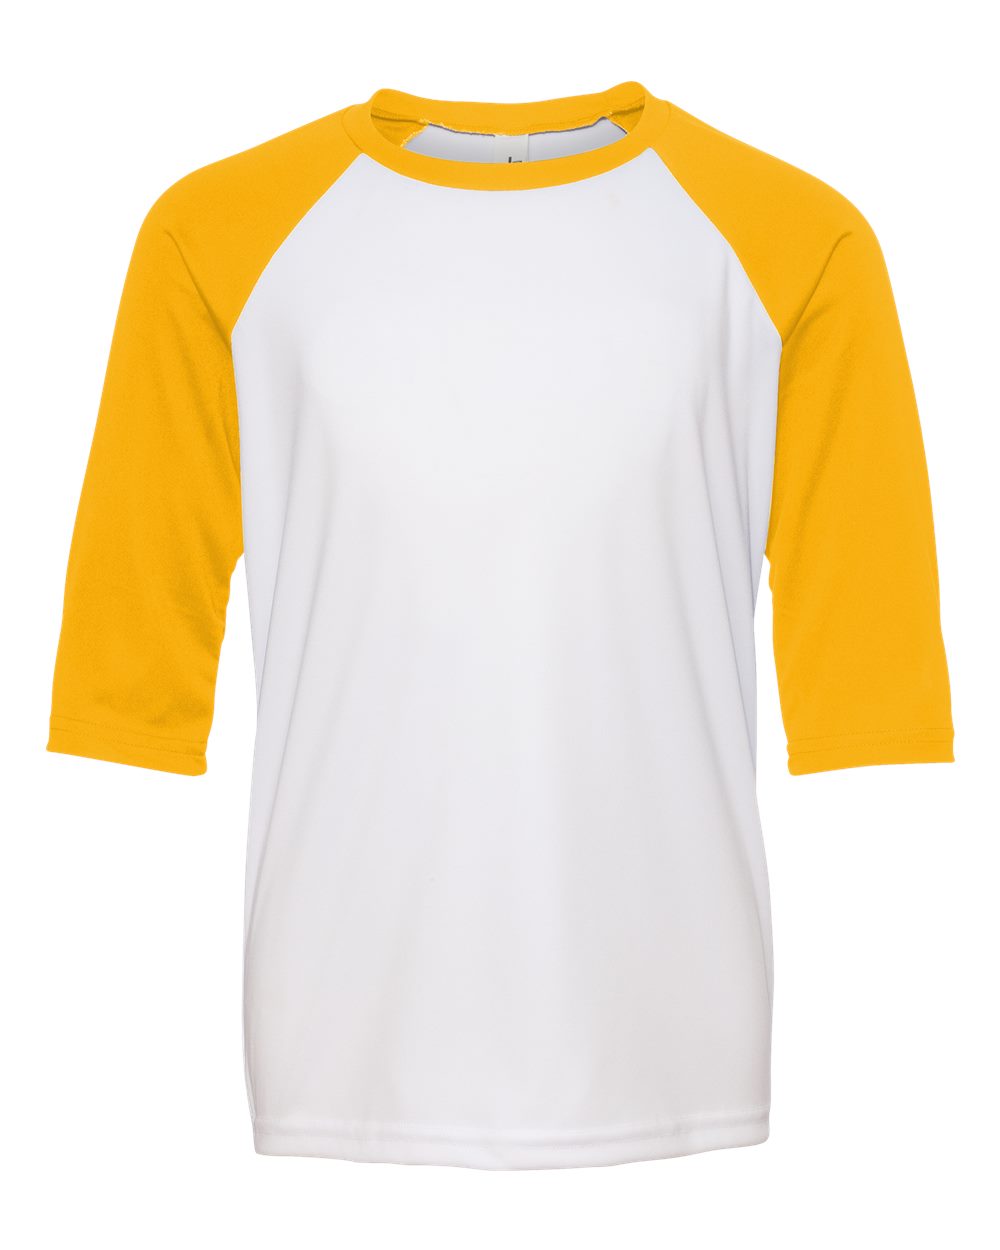 yellow and white baseball shirt